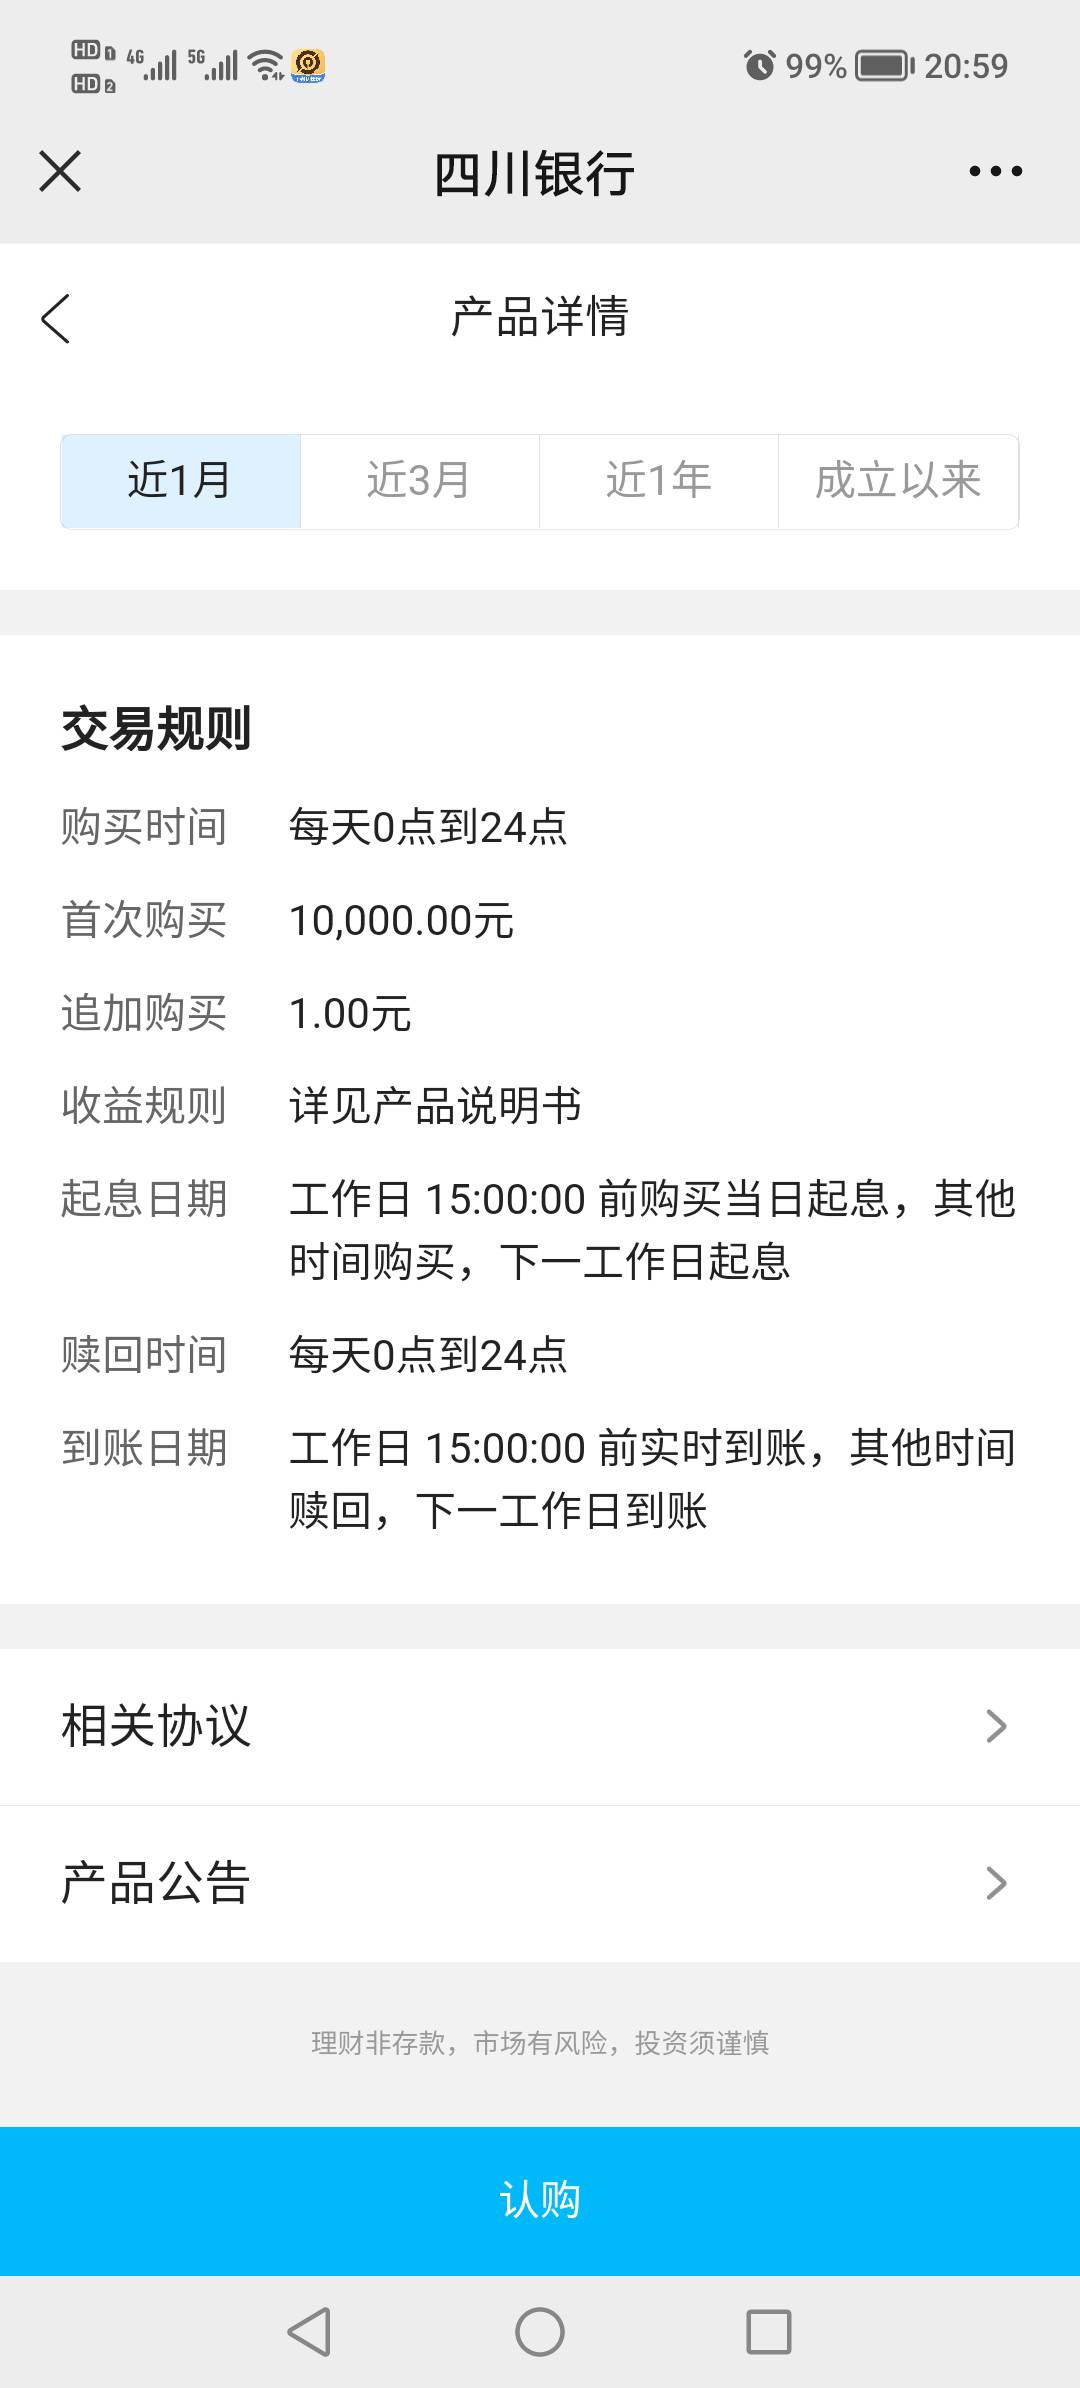 感谢老哥提醒，上个月开过四川银行的微信公众号风险评估5毛可以领的，不用下载，直接14 / 作者:悲切的城市丶 / 